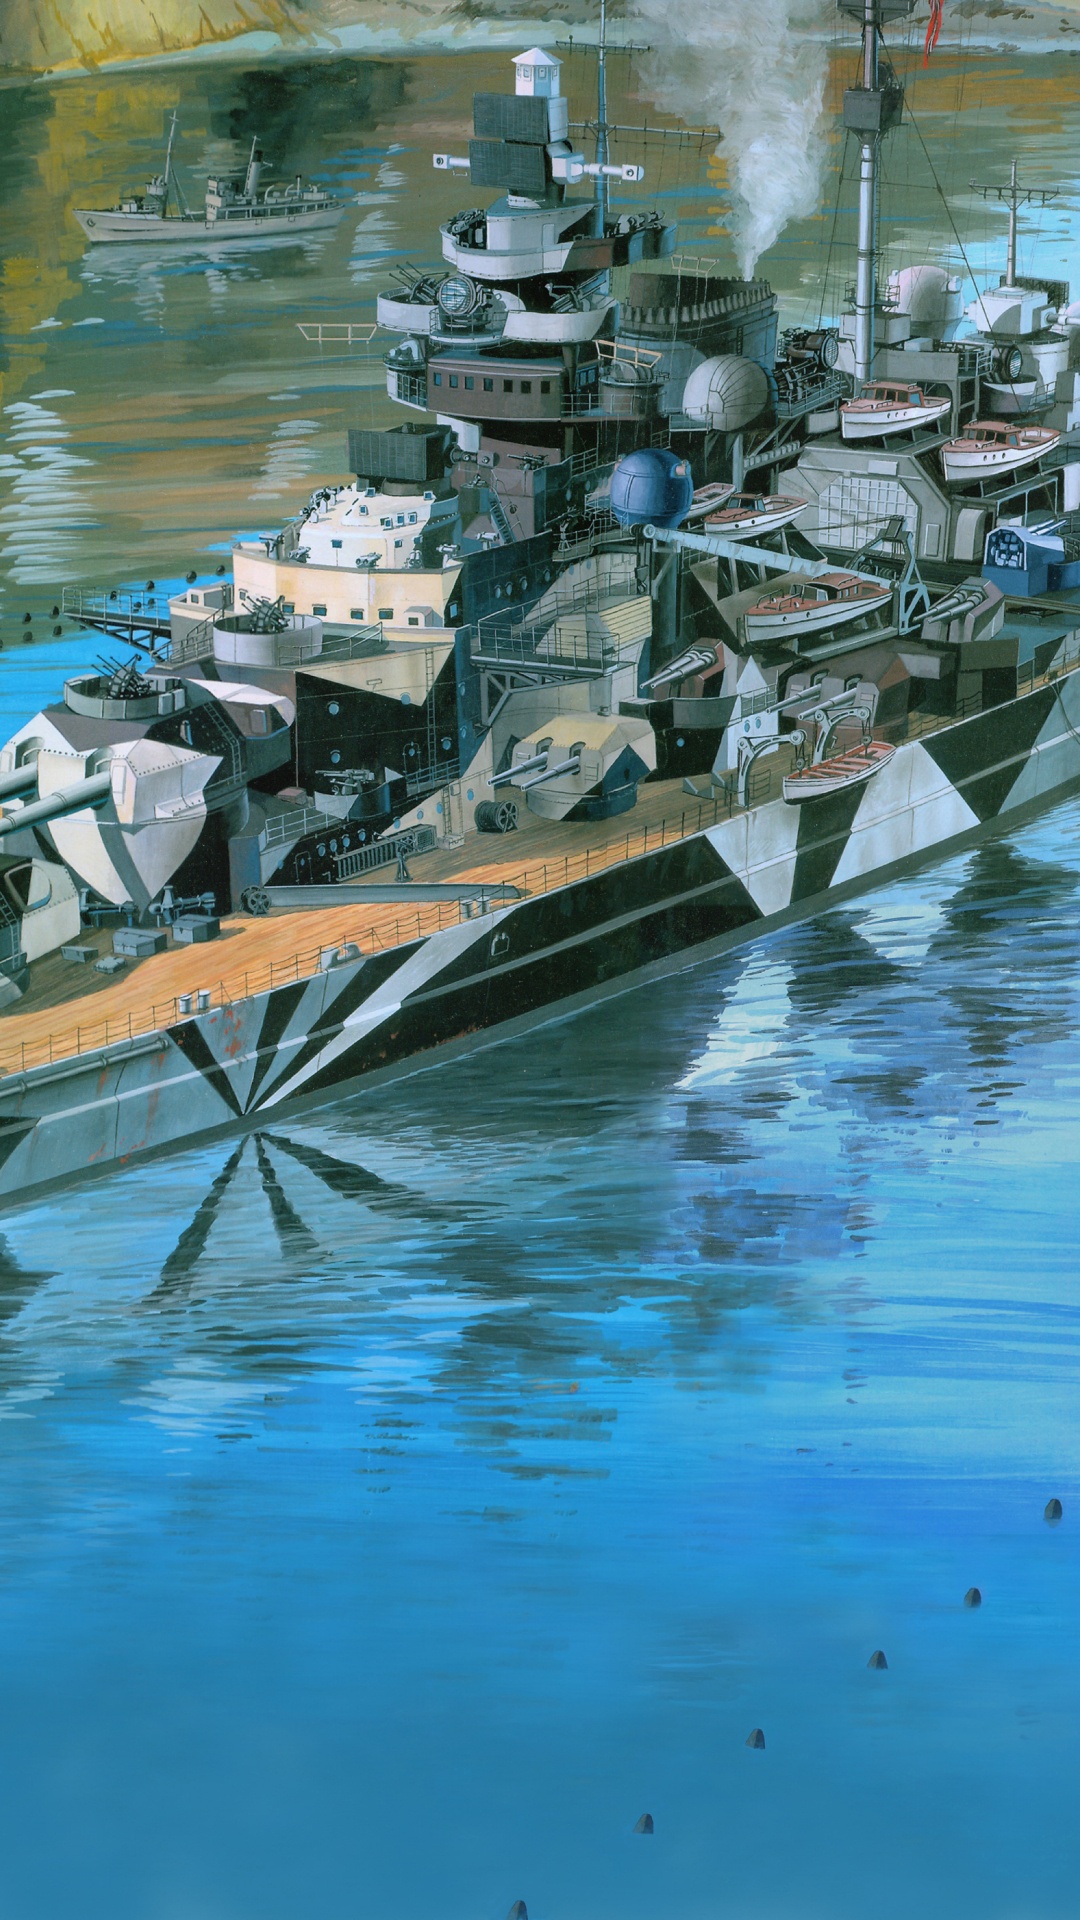 雷维尔, 塑料模型, 船只, 军舰, 战舰 壁纸 1080x1920 允许